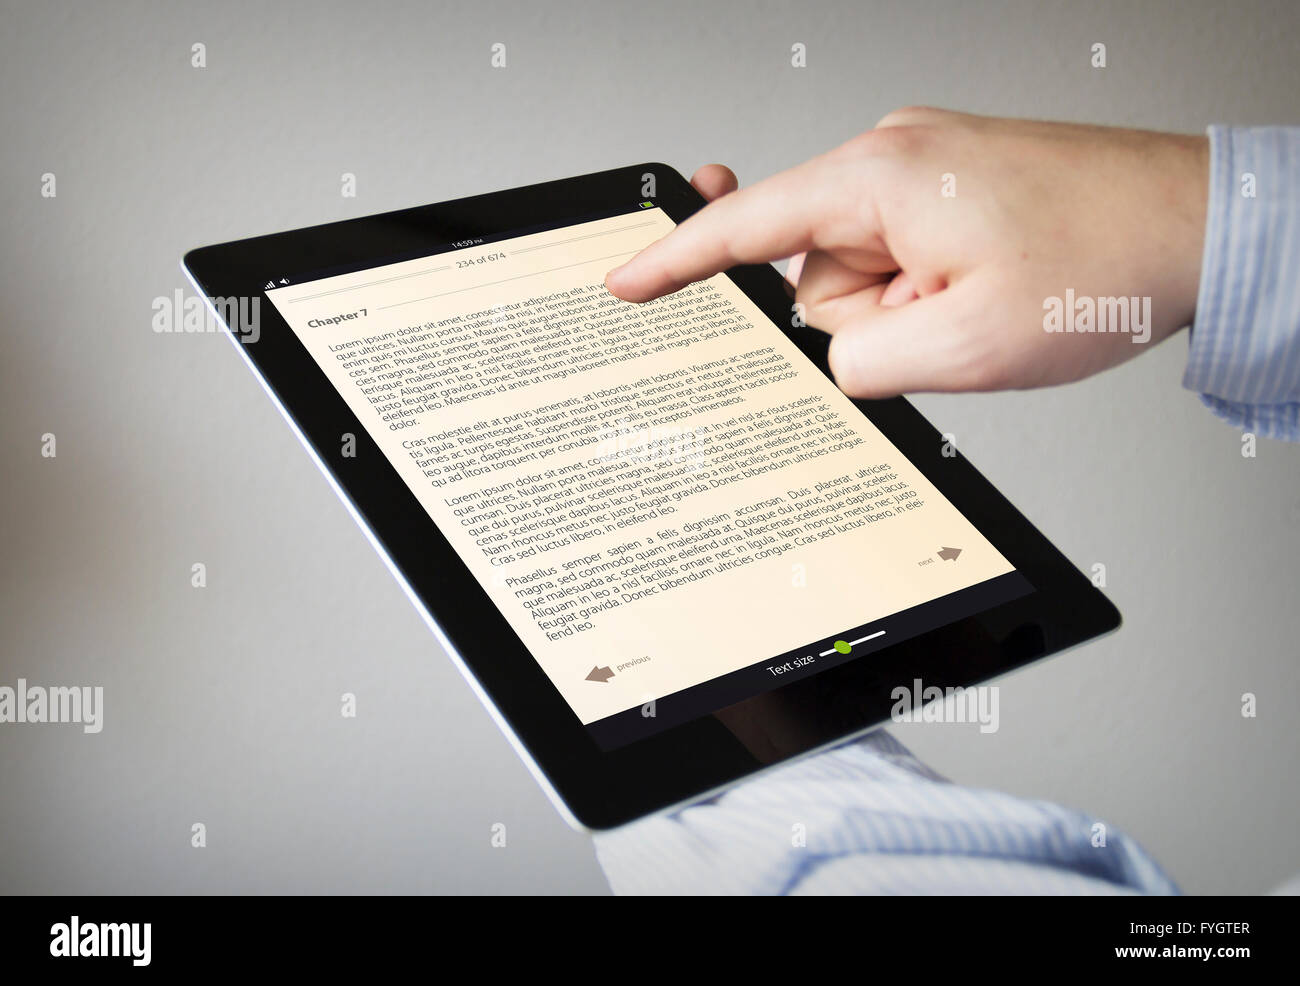 Nouvelles technologies concept : les mains à l'écran tactile du livre électronique Banque D'Images